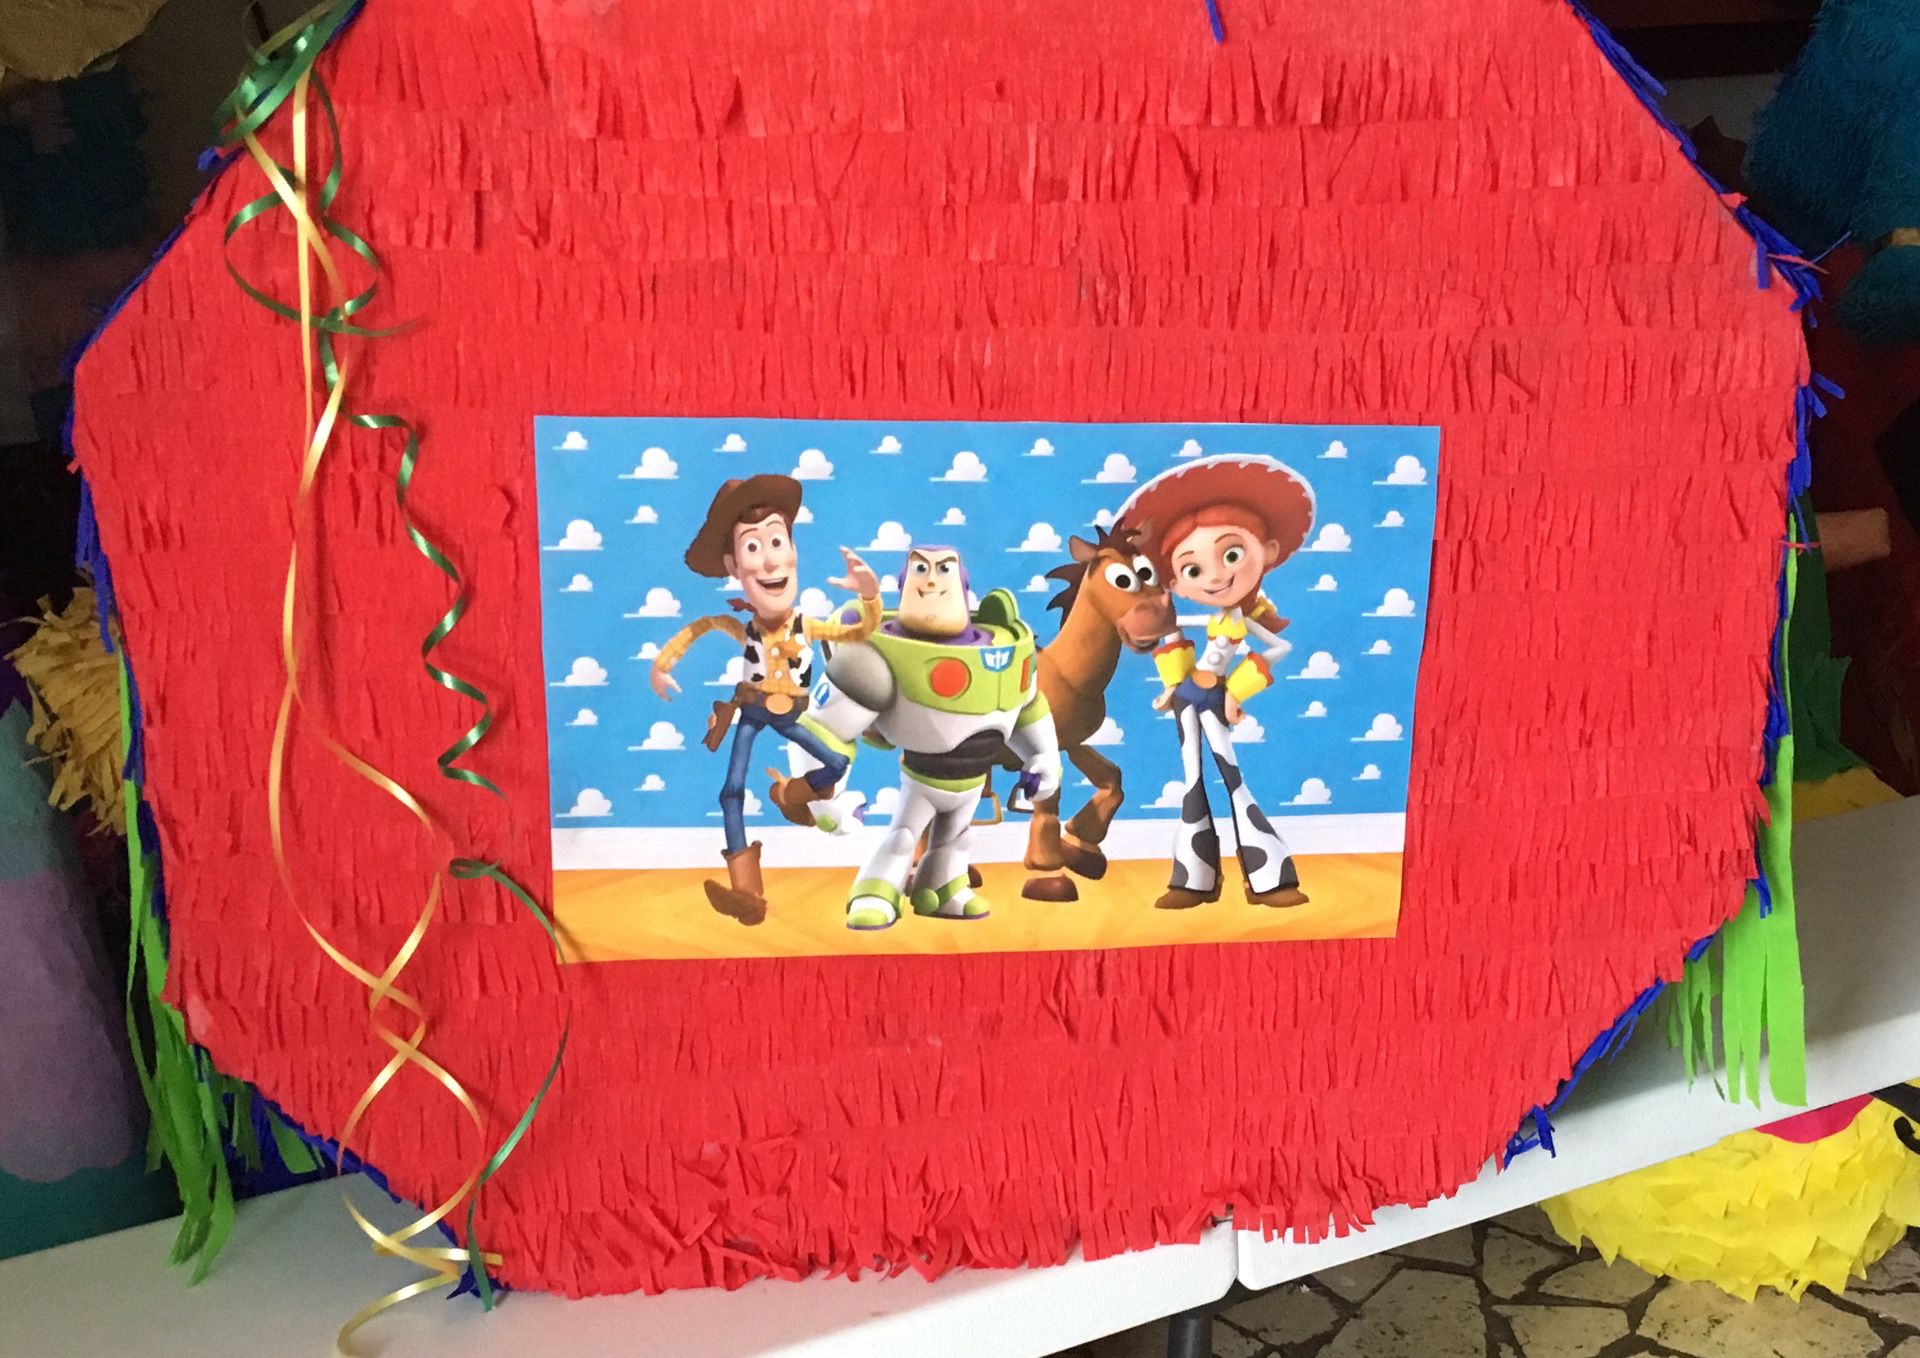 Toy story piñata